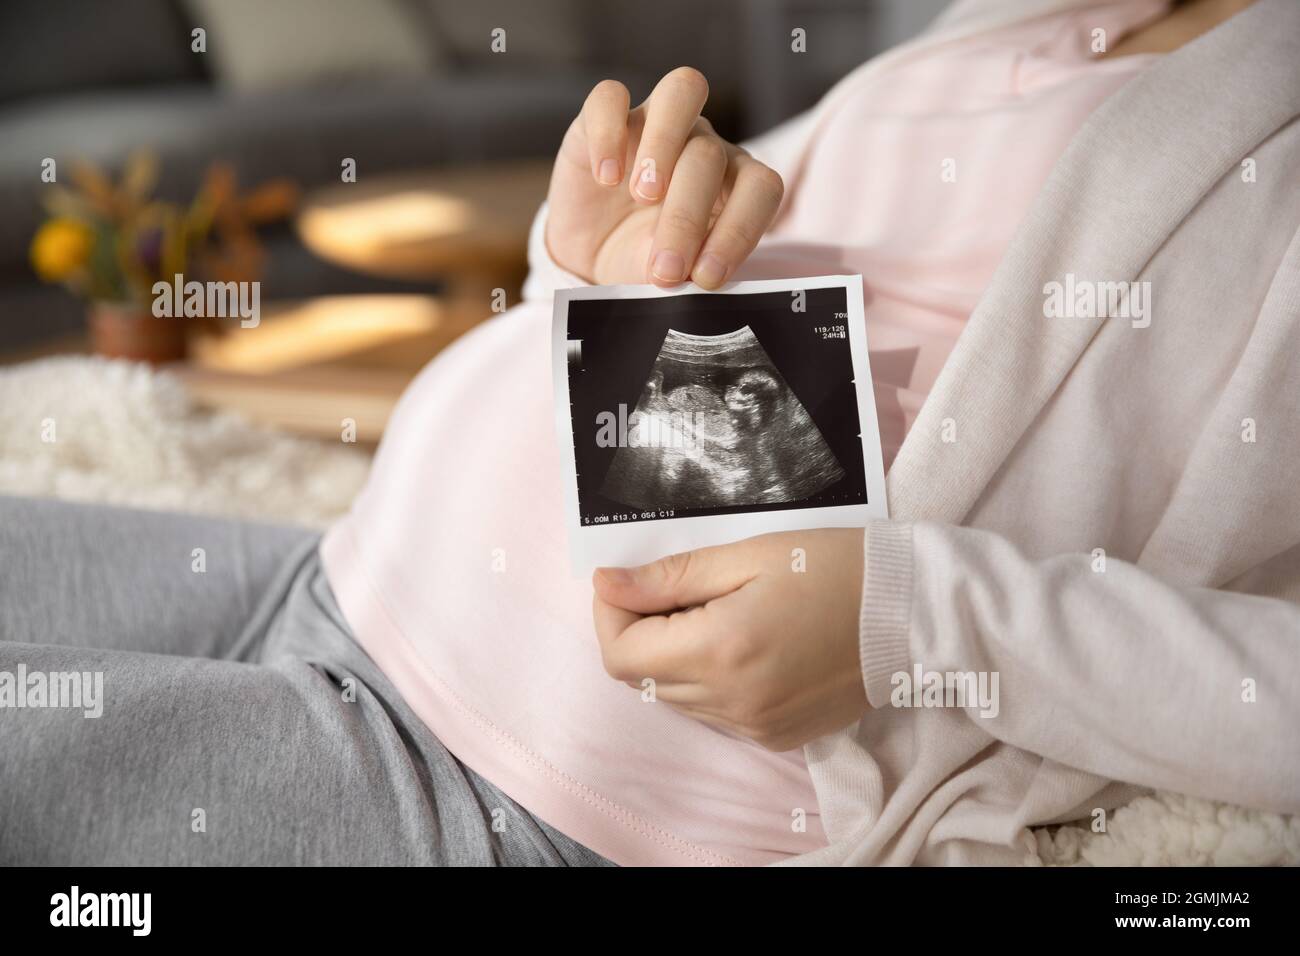 Junge Frau, die ein Kind erwartet, hält das Sonogramm des zukünftigen Babys Stockfoto